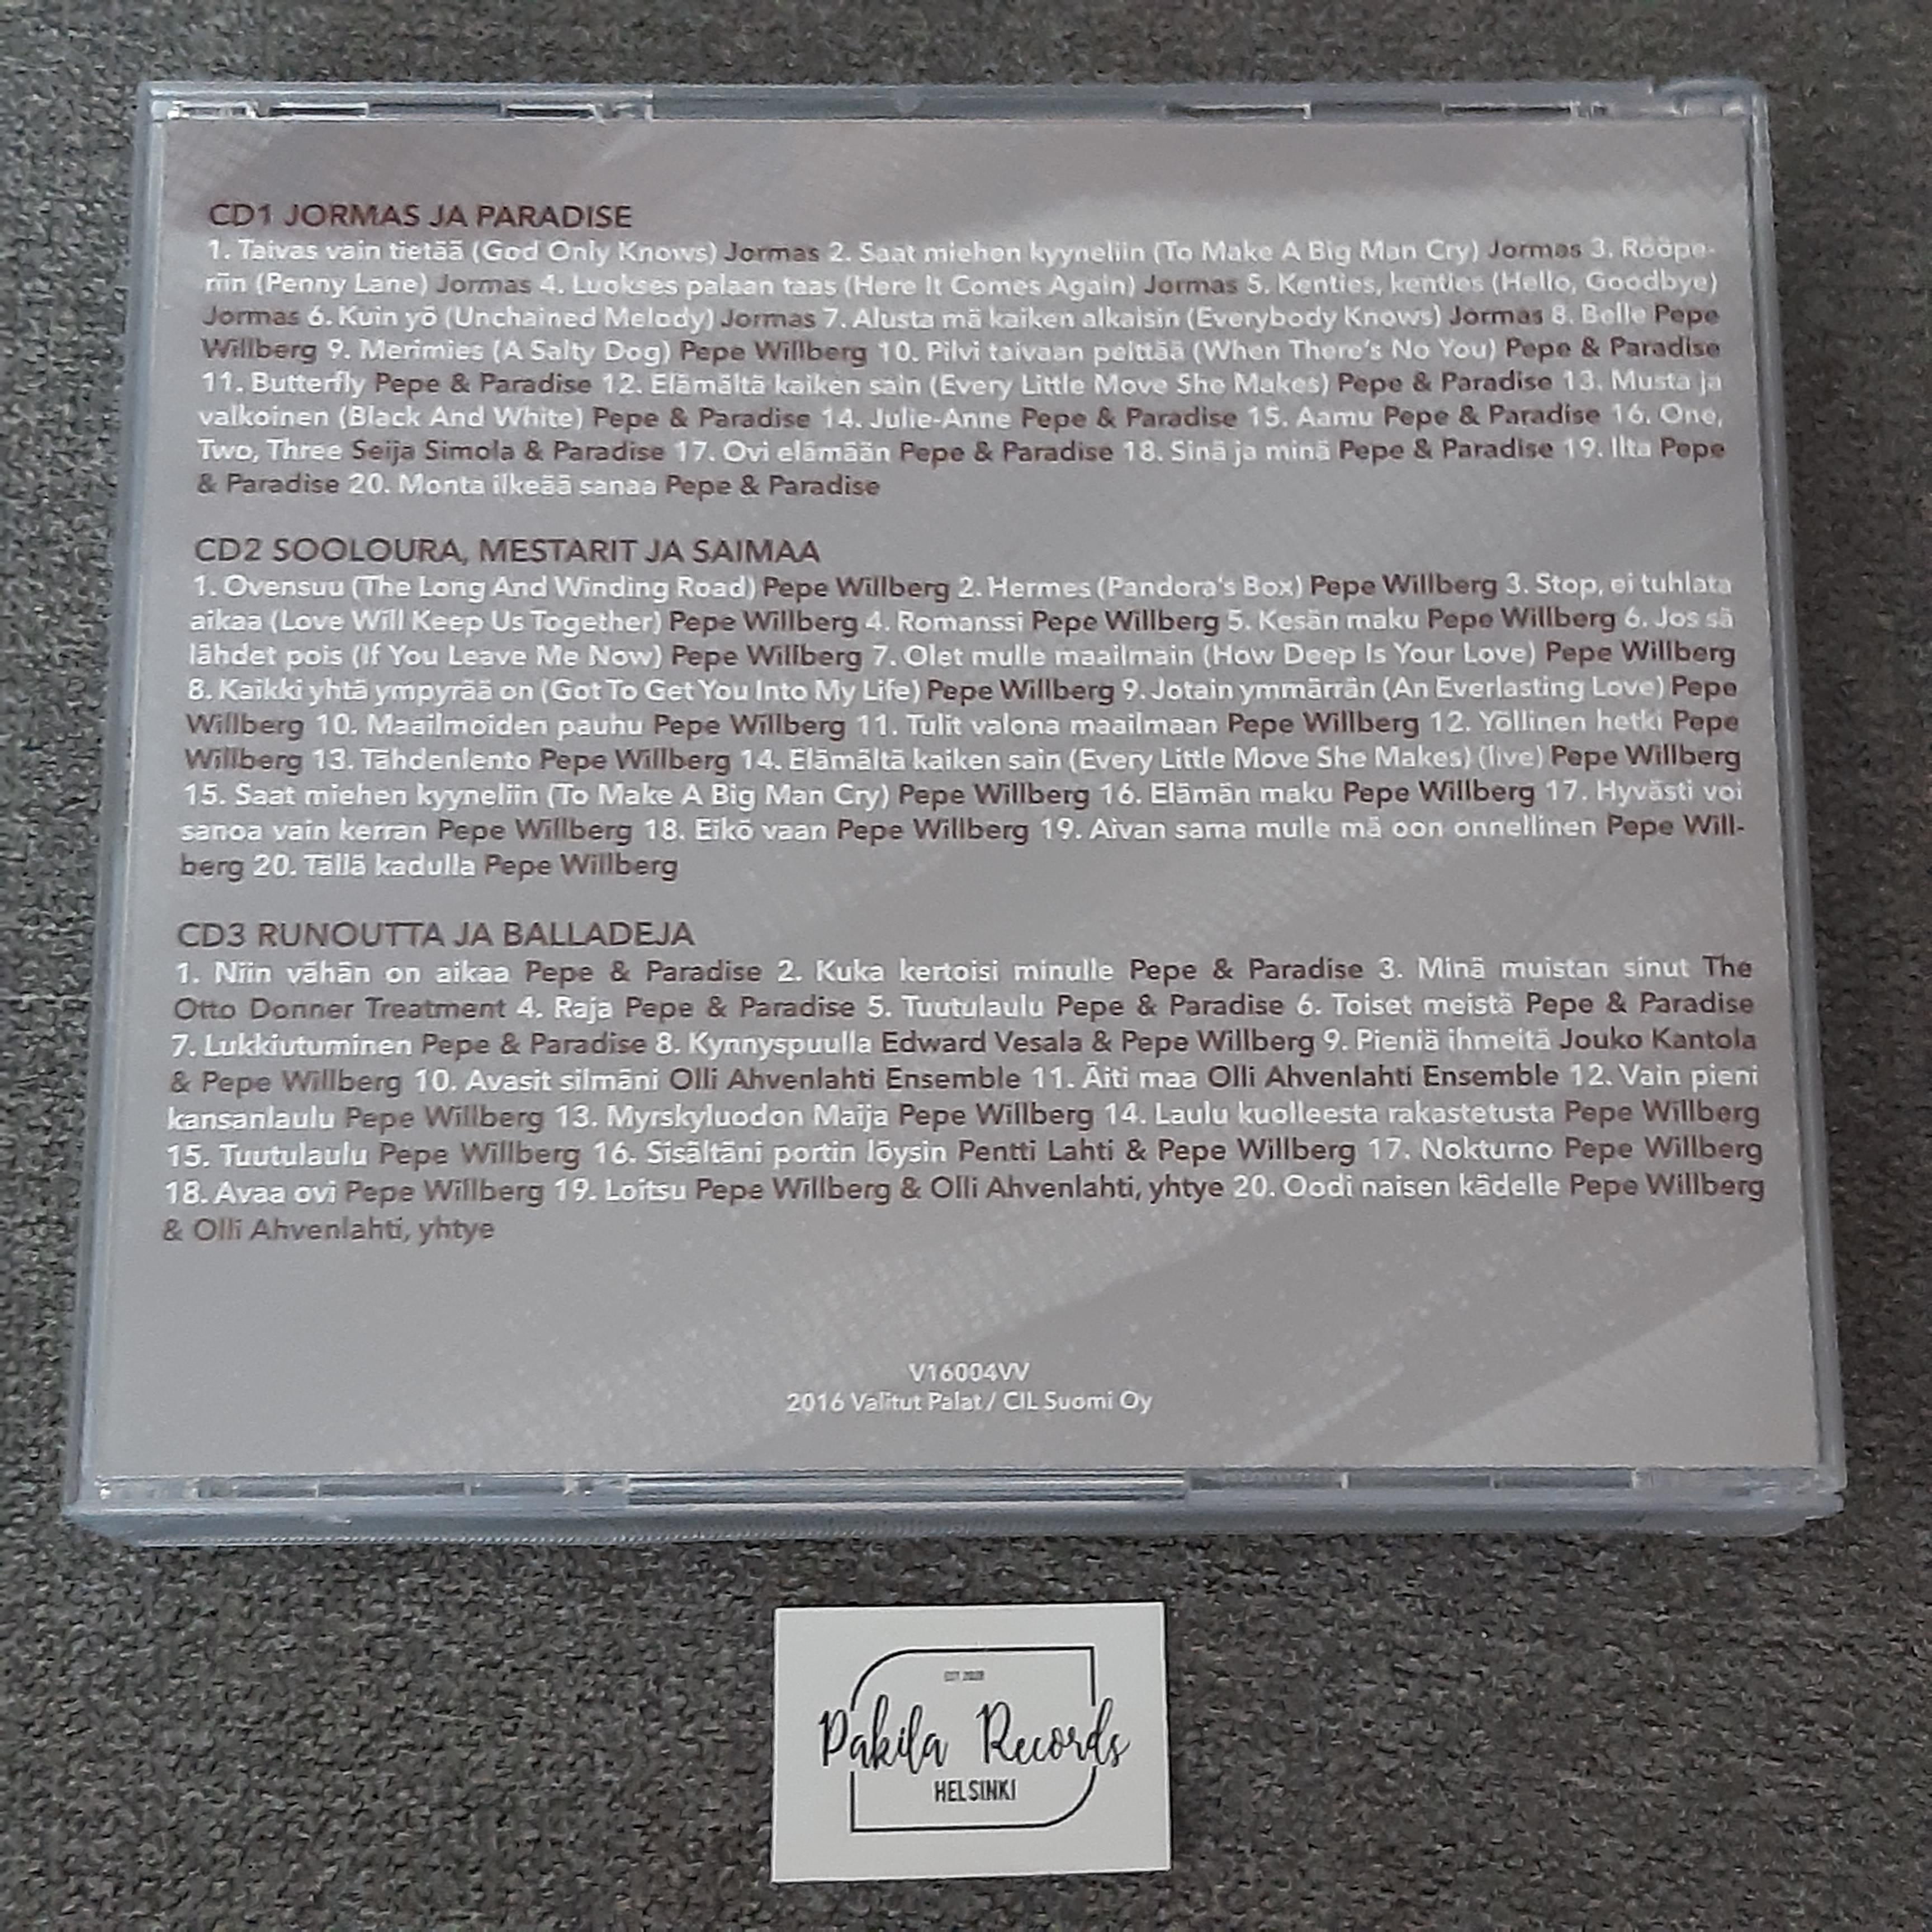 Pepe Willberg - Toiset meistä - 3 CD (käytetty)